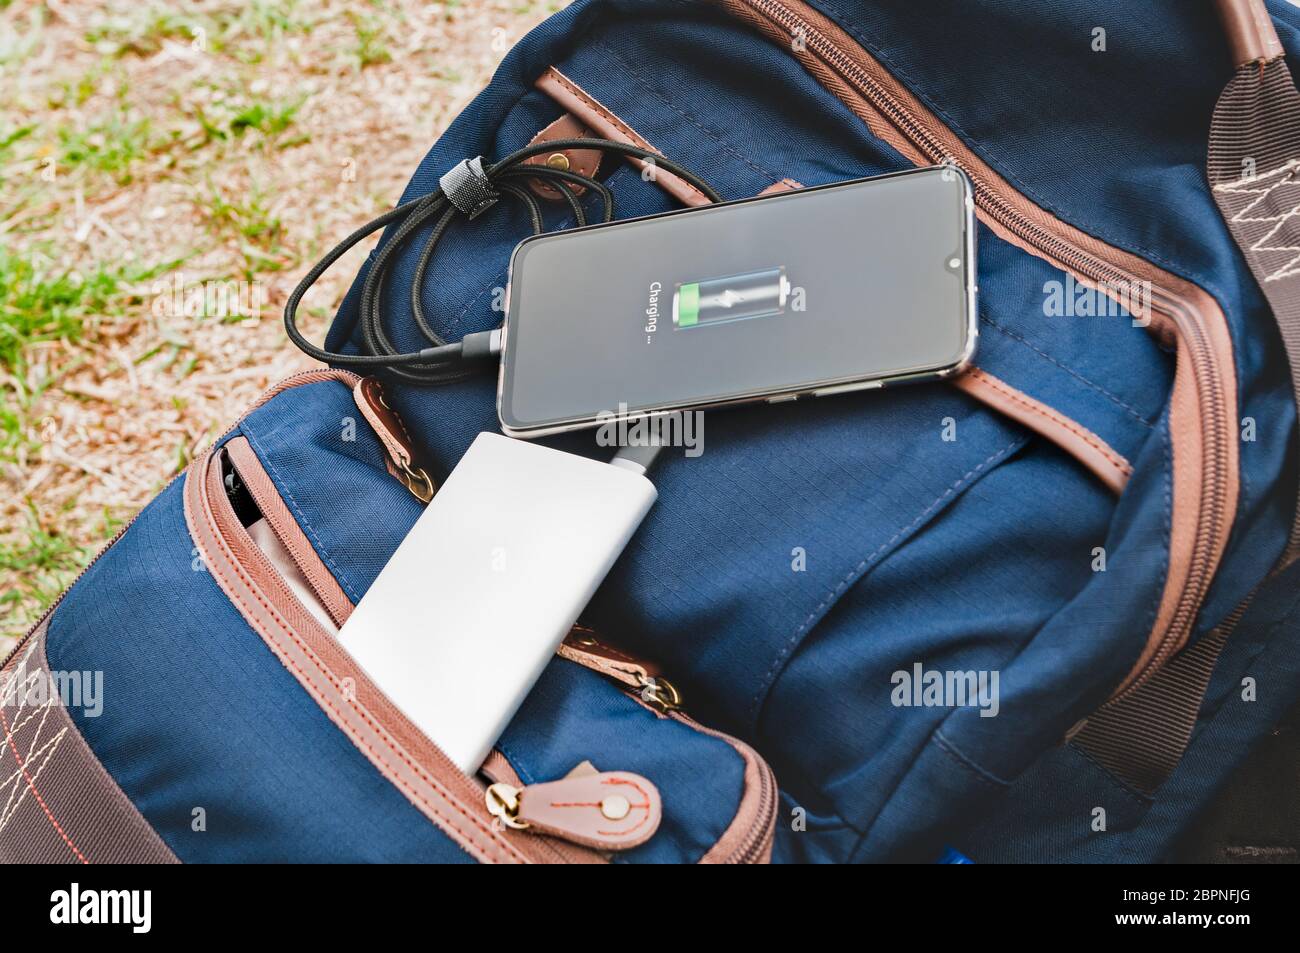 Il moderno smartphone viene caricato da una banca elettrica mentre si sdraia sullo zaino durante un'escursione. Concetto di stile di vita Foto Stock